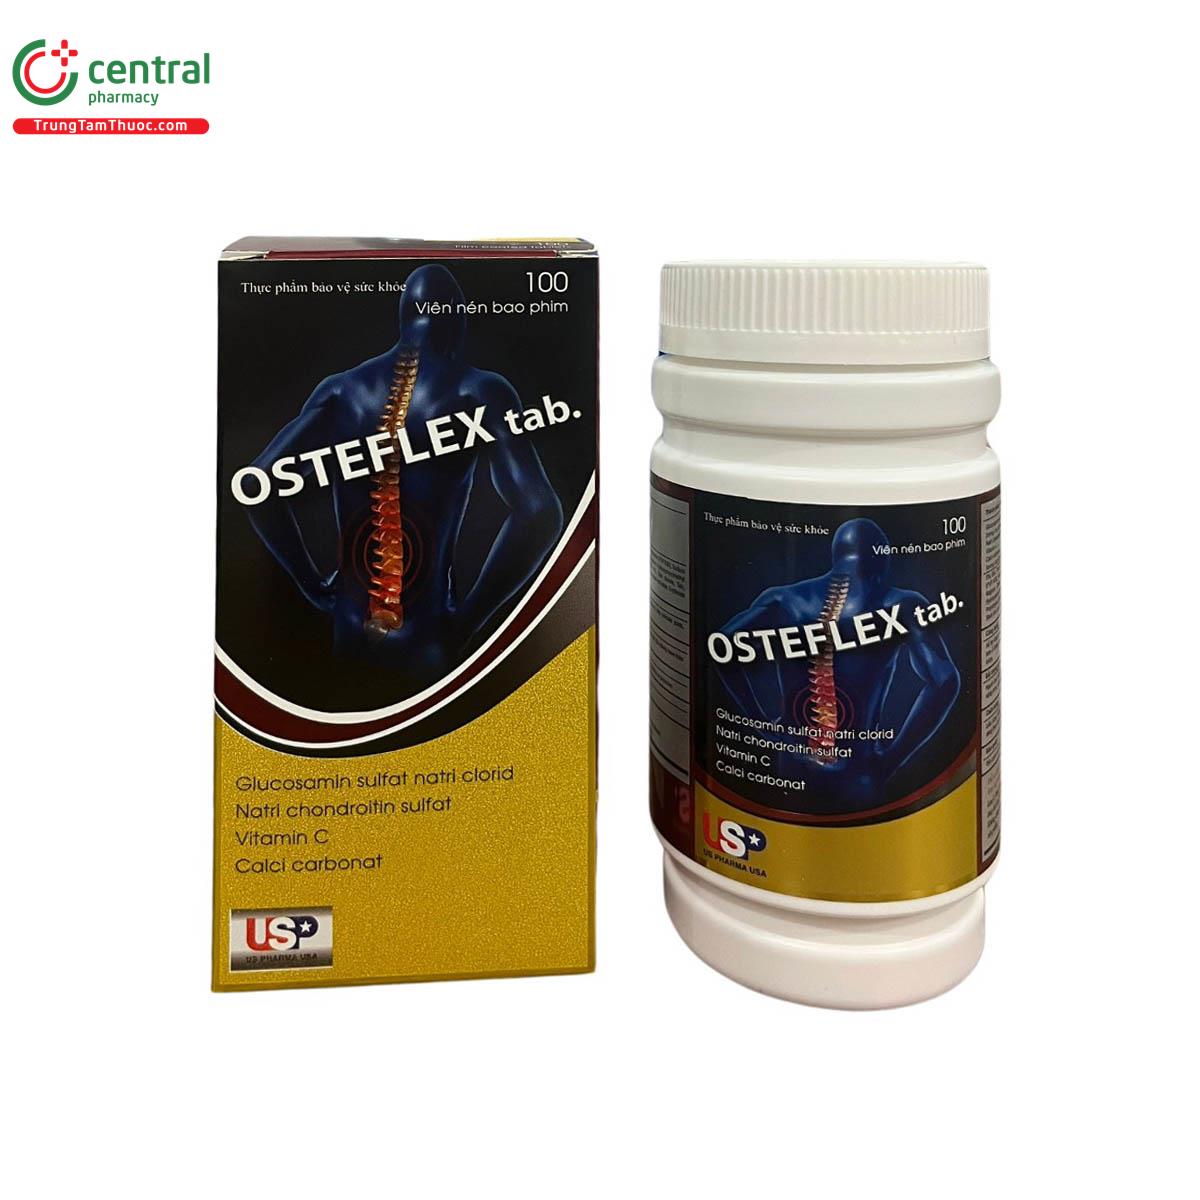 osteflex tab 1 Q6406